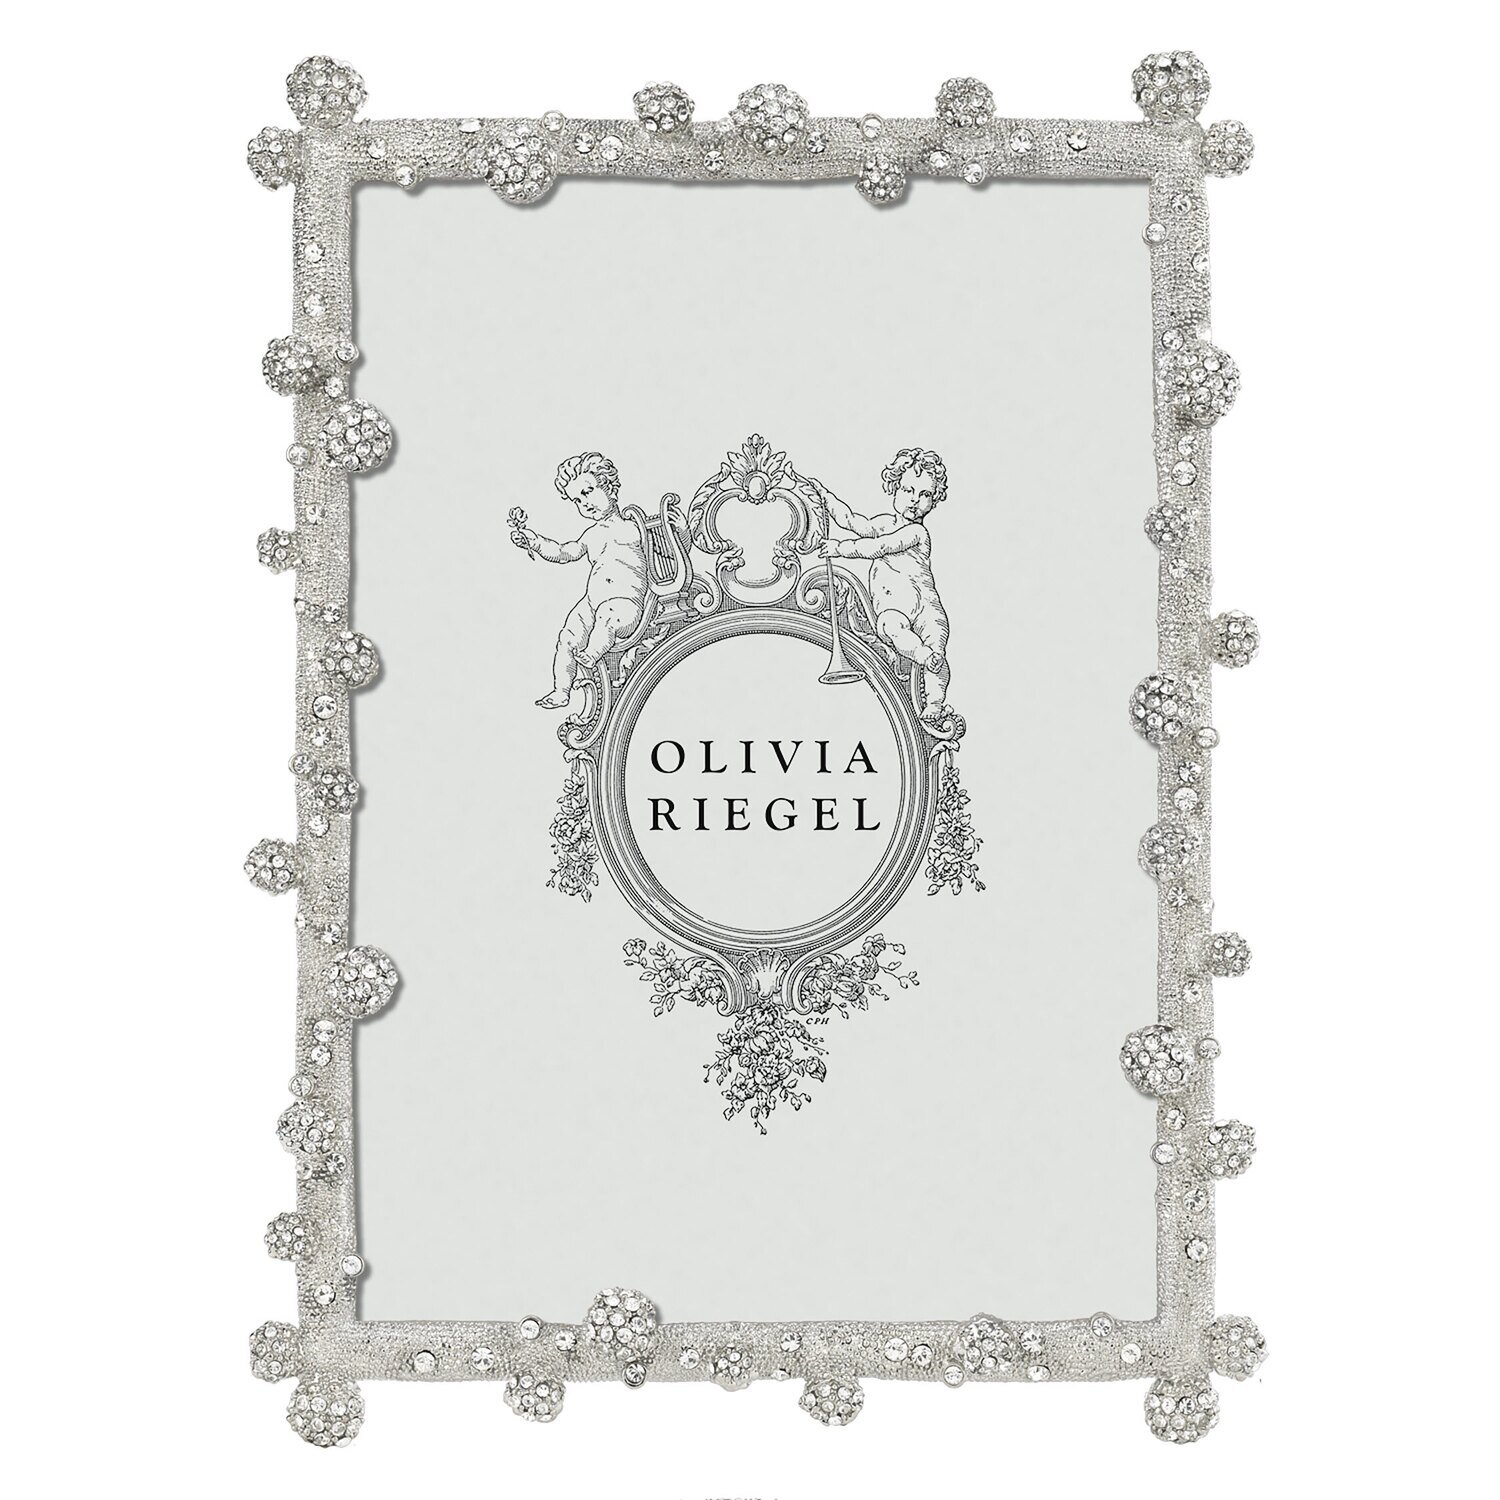 Olivia Riegel Silver Pav Odyssey 5 x 7 Inch Picture Frame RT0030